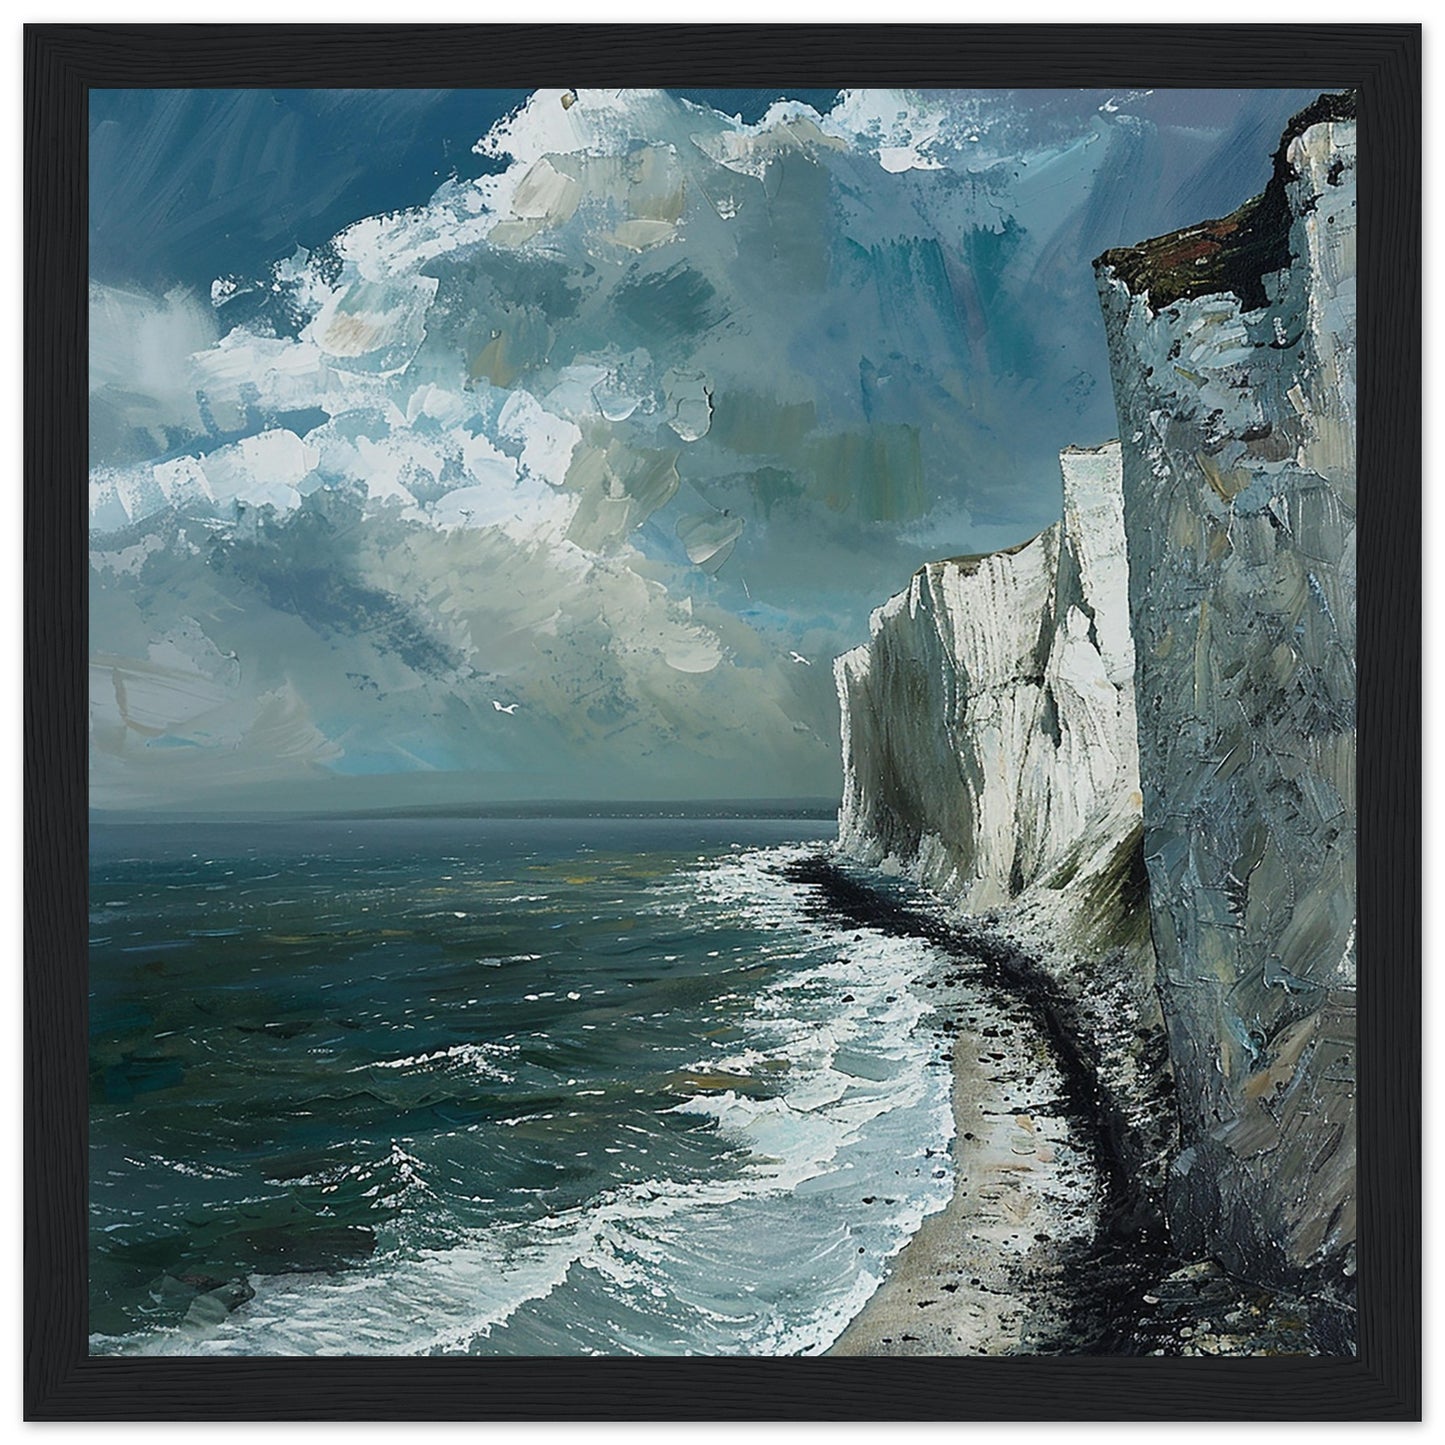 Artwork Print Majestic Cliffs: Serenity at Sea, Dover large framed Black Wood Frame| By Print Room Ltd